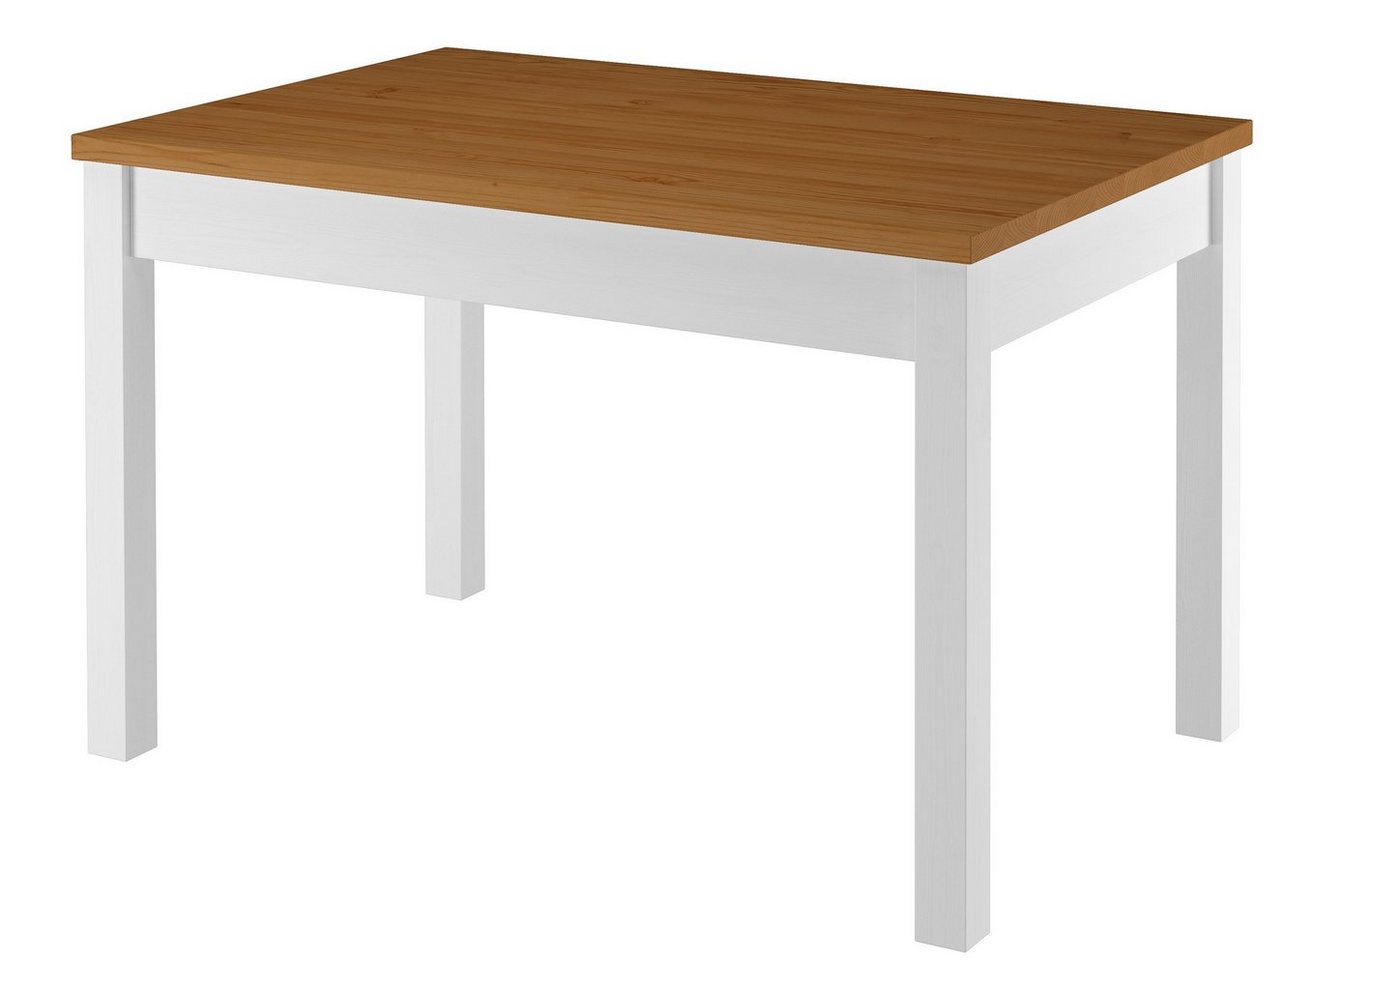 ERST-HOLZ Küchentisch Tisch 80x120 Esstisch Tischplatte Eichefarben weiße Beine Massivholz von ERST-HOLZ